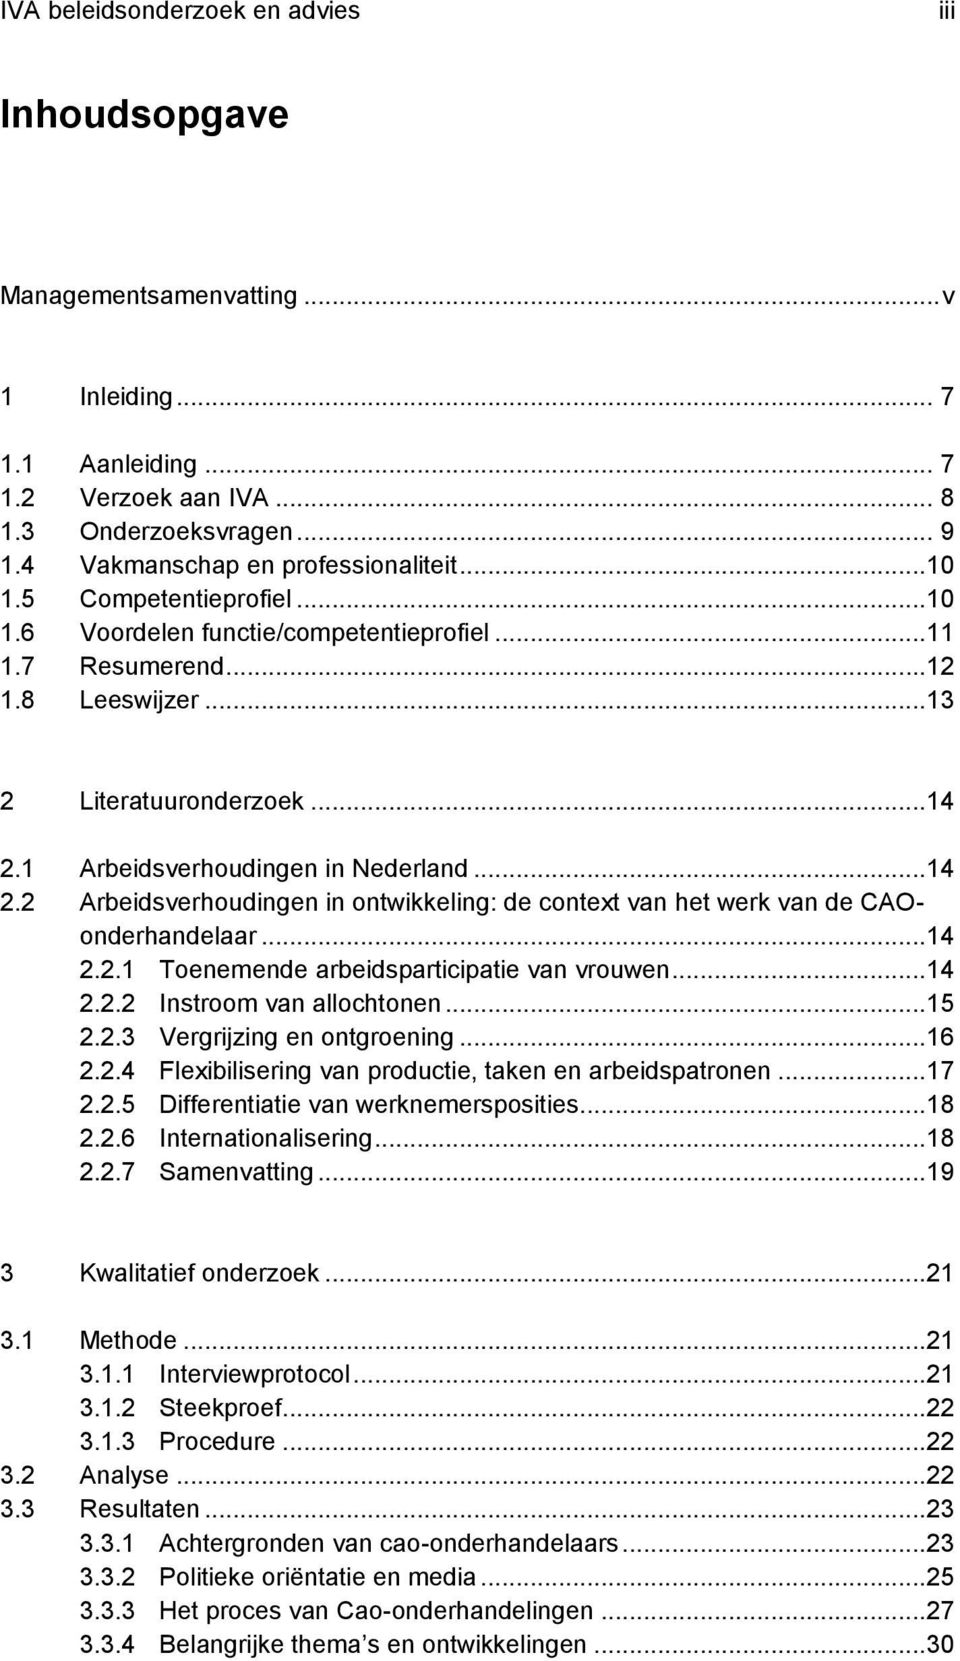 1 Arbeidsverhoudingen in Nederland...14 2.2 Arbeidsverhoudingen in ontwikkeling: de context van het werk van de CAOonderhandelaar...14 2.2.1 Toenemende arbeidsparticipatie van vrouwen...14 2.2.2 Instroom van allochtonen.